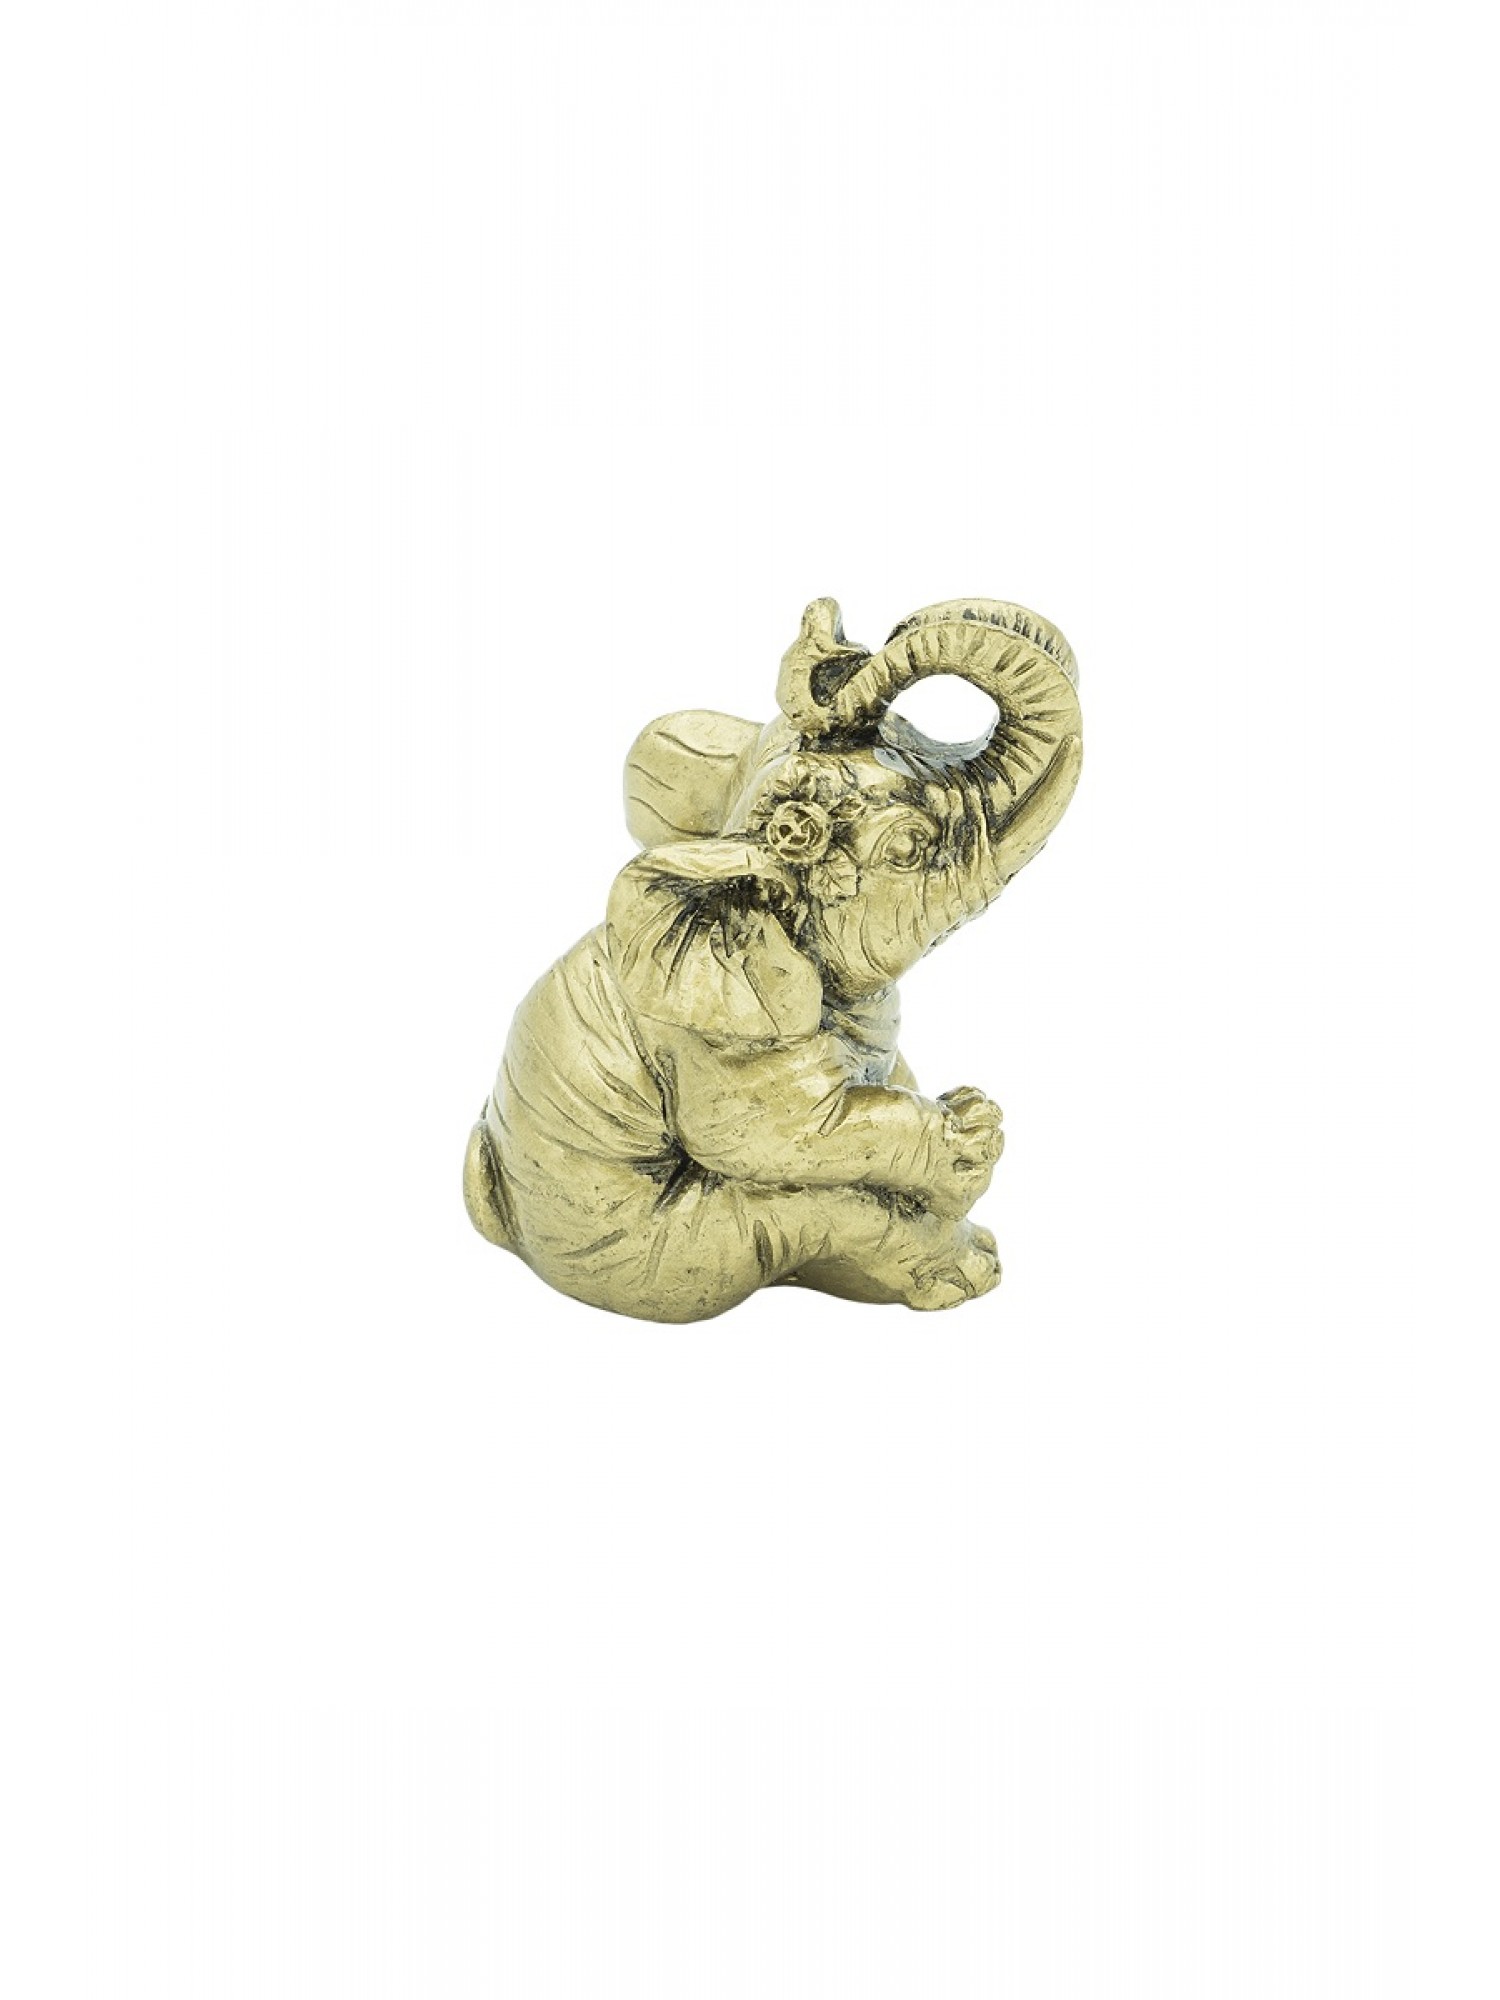 Статуэтка "Слон с Цветком" из смолы привлечет в Вашу жизнь счастье, удачу, радость и убережет от уныния